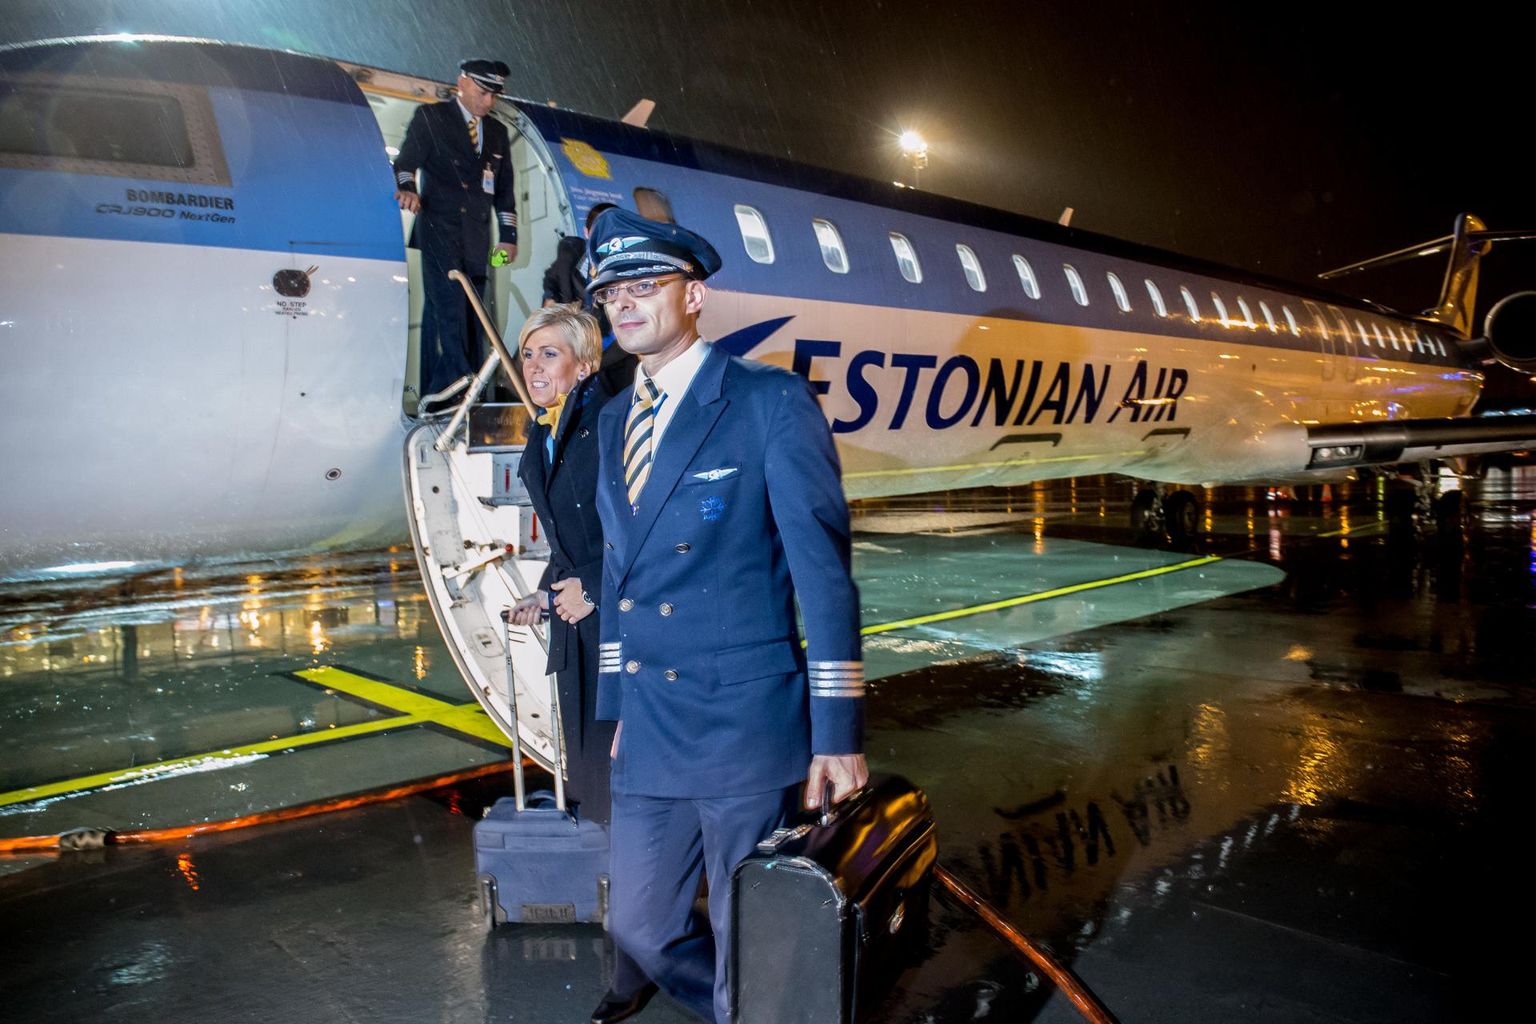 Estonian Airi lennukiga viimase lennu teinud piloot Immanuel Pärt (esiplaanil) on üks paljudest, kes endise tööandjaga kohut käib.